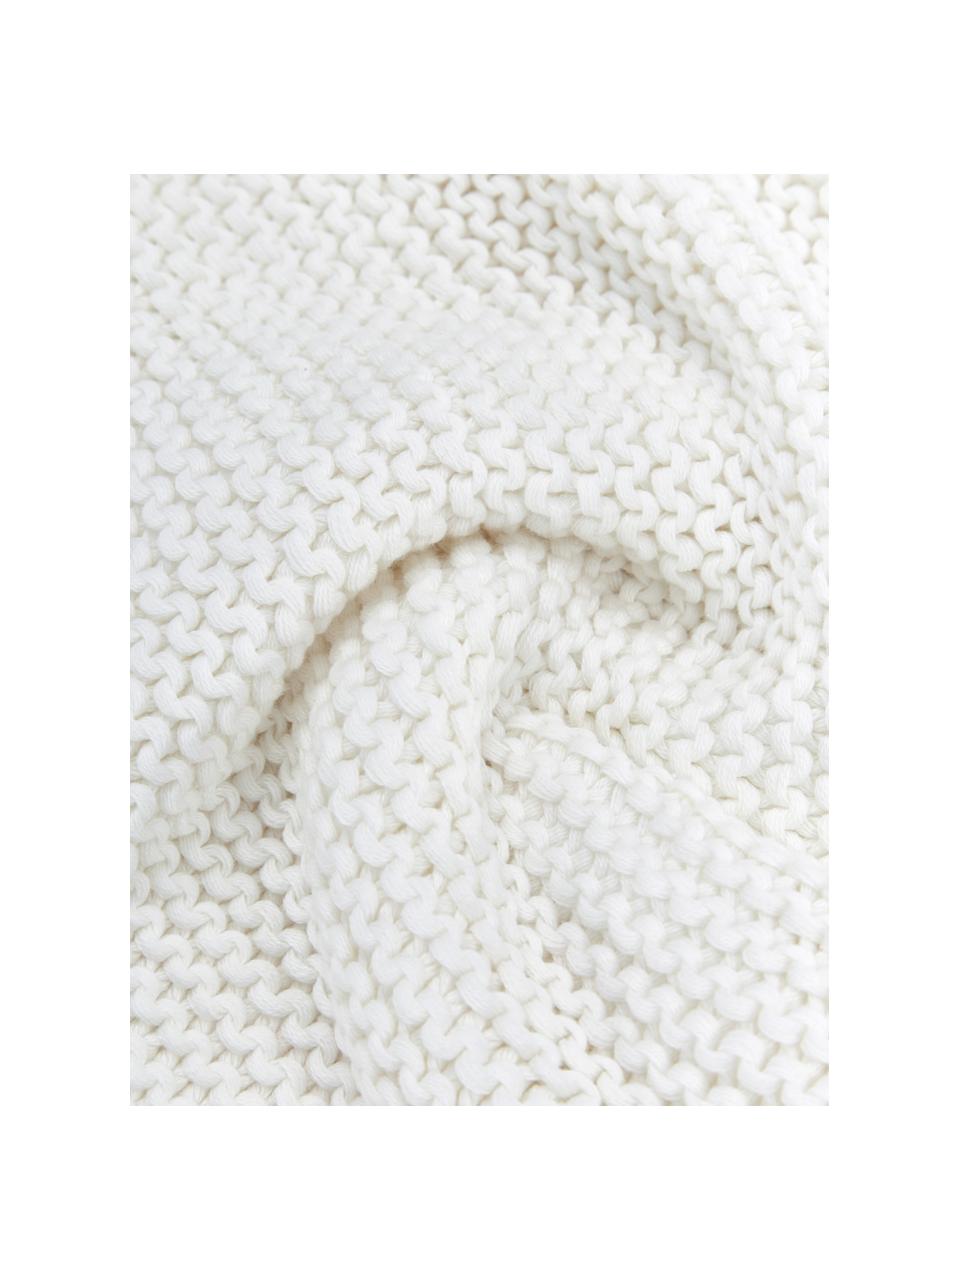 Federa arredo a maglia in cotone biologico bianco lana Adalyn, 100% cotone organico certificato GOTS, Bianco naturale, Larg. 40 x Lung. 40 cm